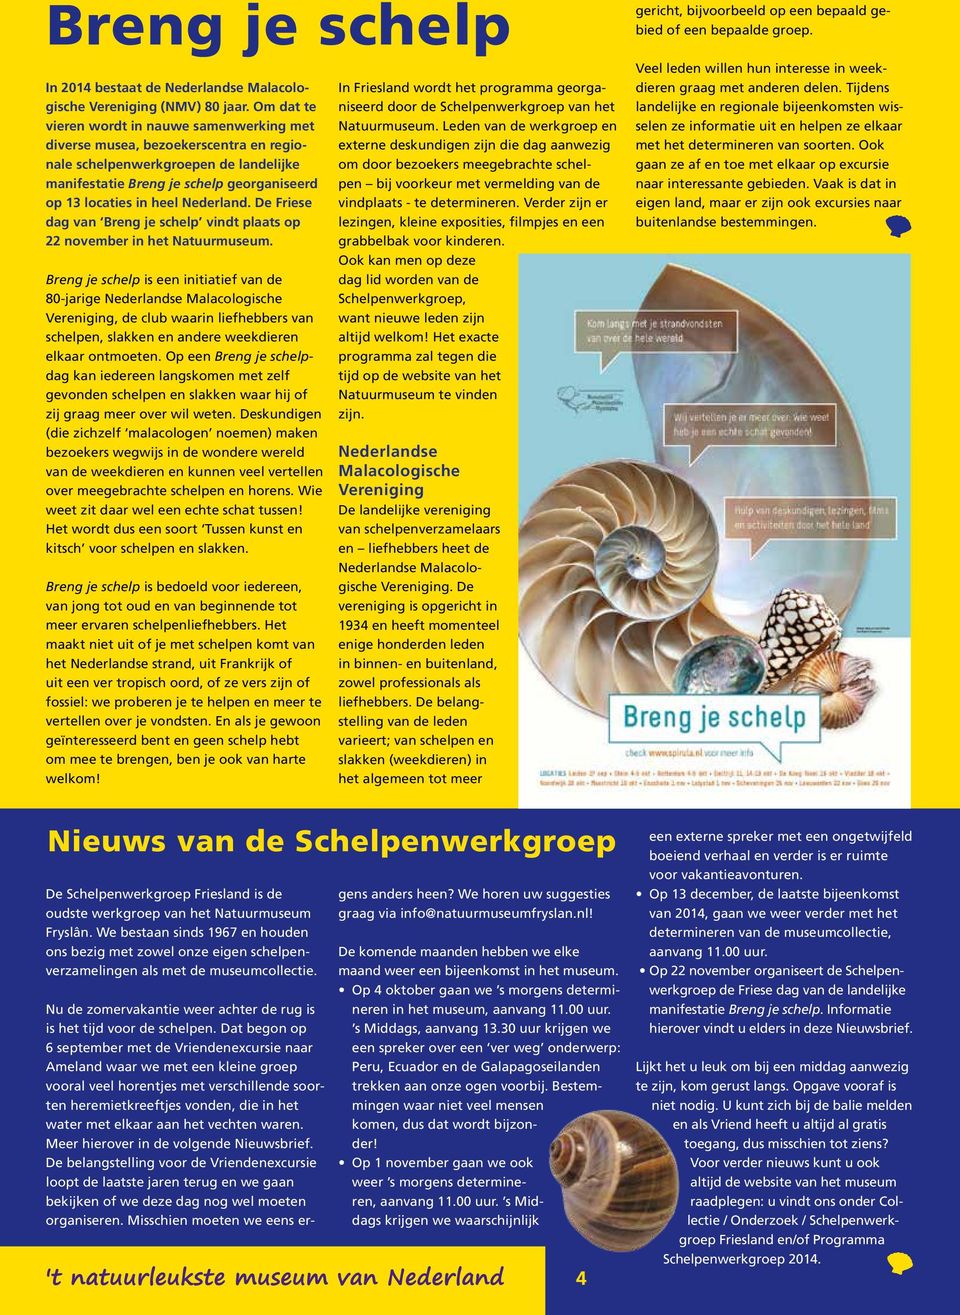 Nederland. De Friese dag van Breng je schelp vindt plaats op 22 november in het Natuurmuseum.